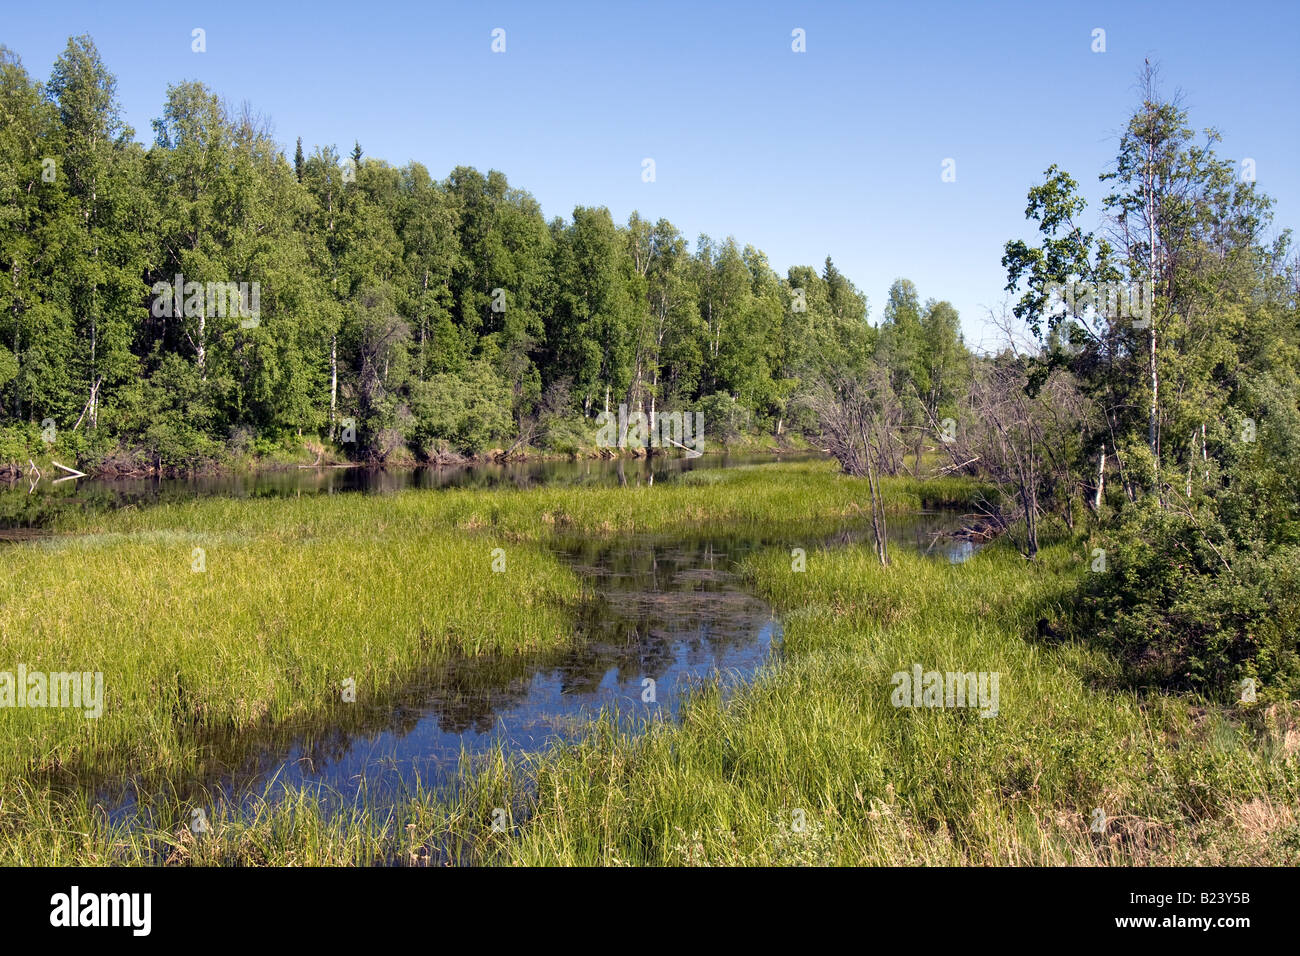 Creek surrounded by trees near Fairbanks, Alaska Stock Photo